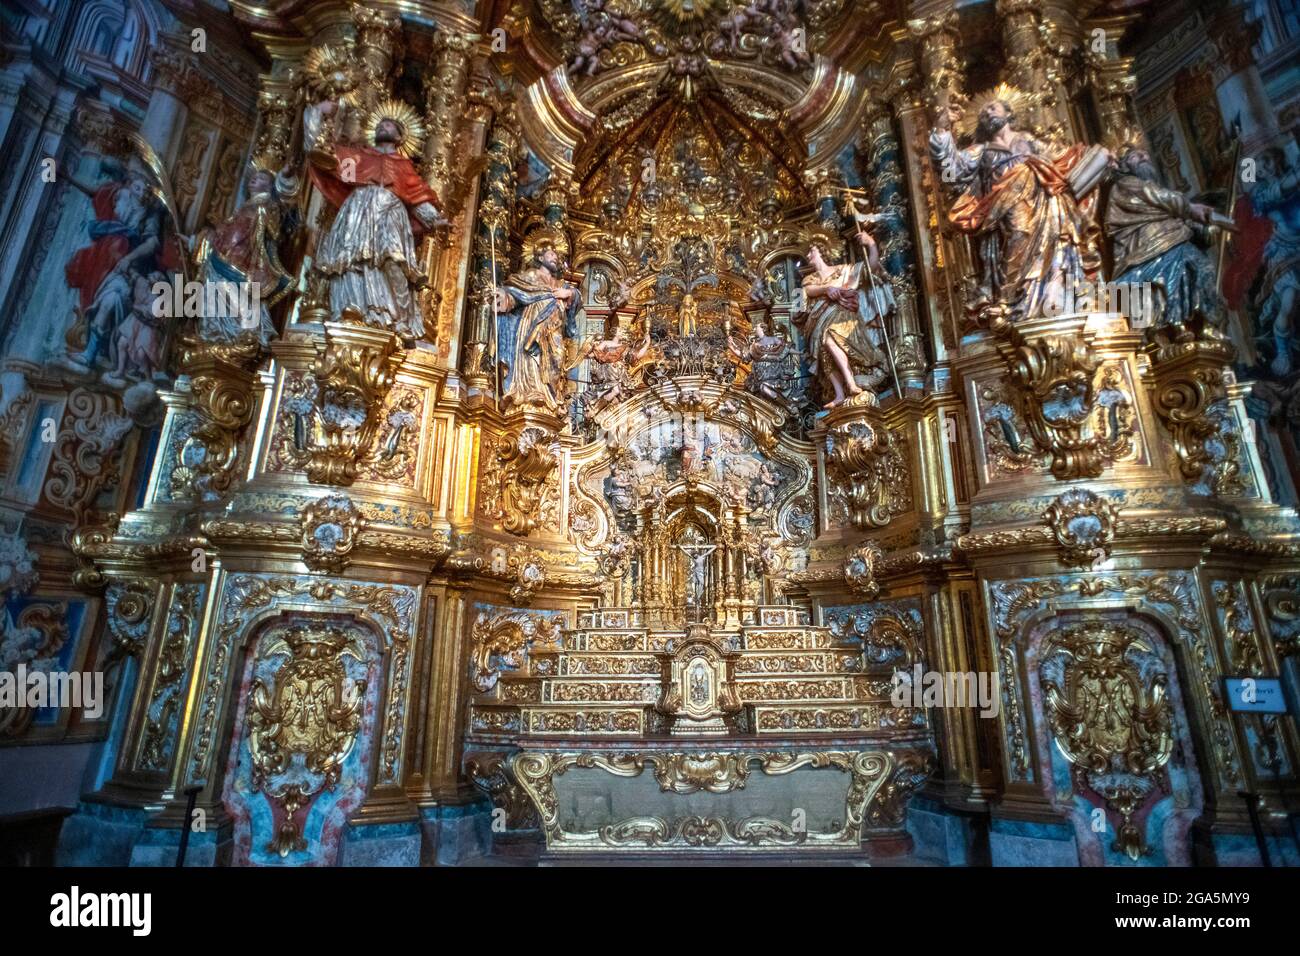 Barockes Altarbild des Wunderheiligtums, Riner, Katalonien, Spanien. In der Kapelle von Santísimo wurde das Renaissance-Altarbild aus dem Jahr 1530 errichtet Stockfoto